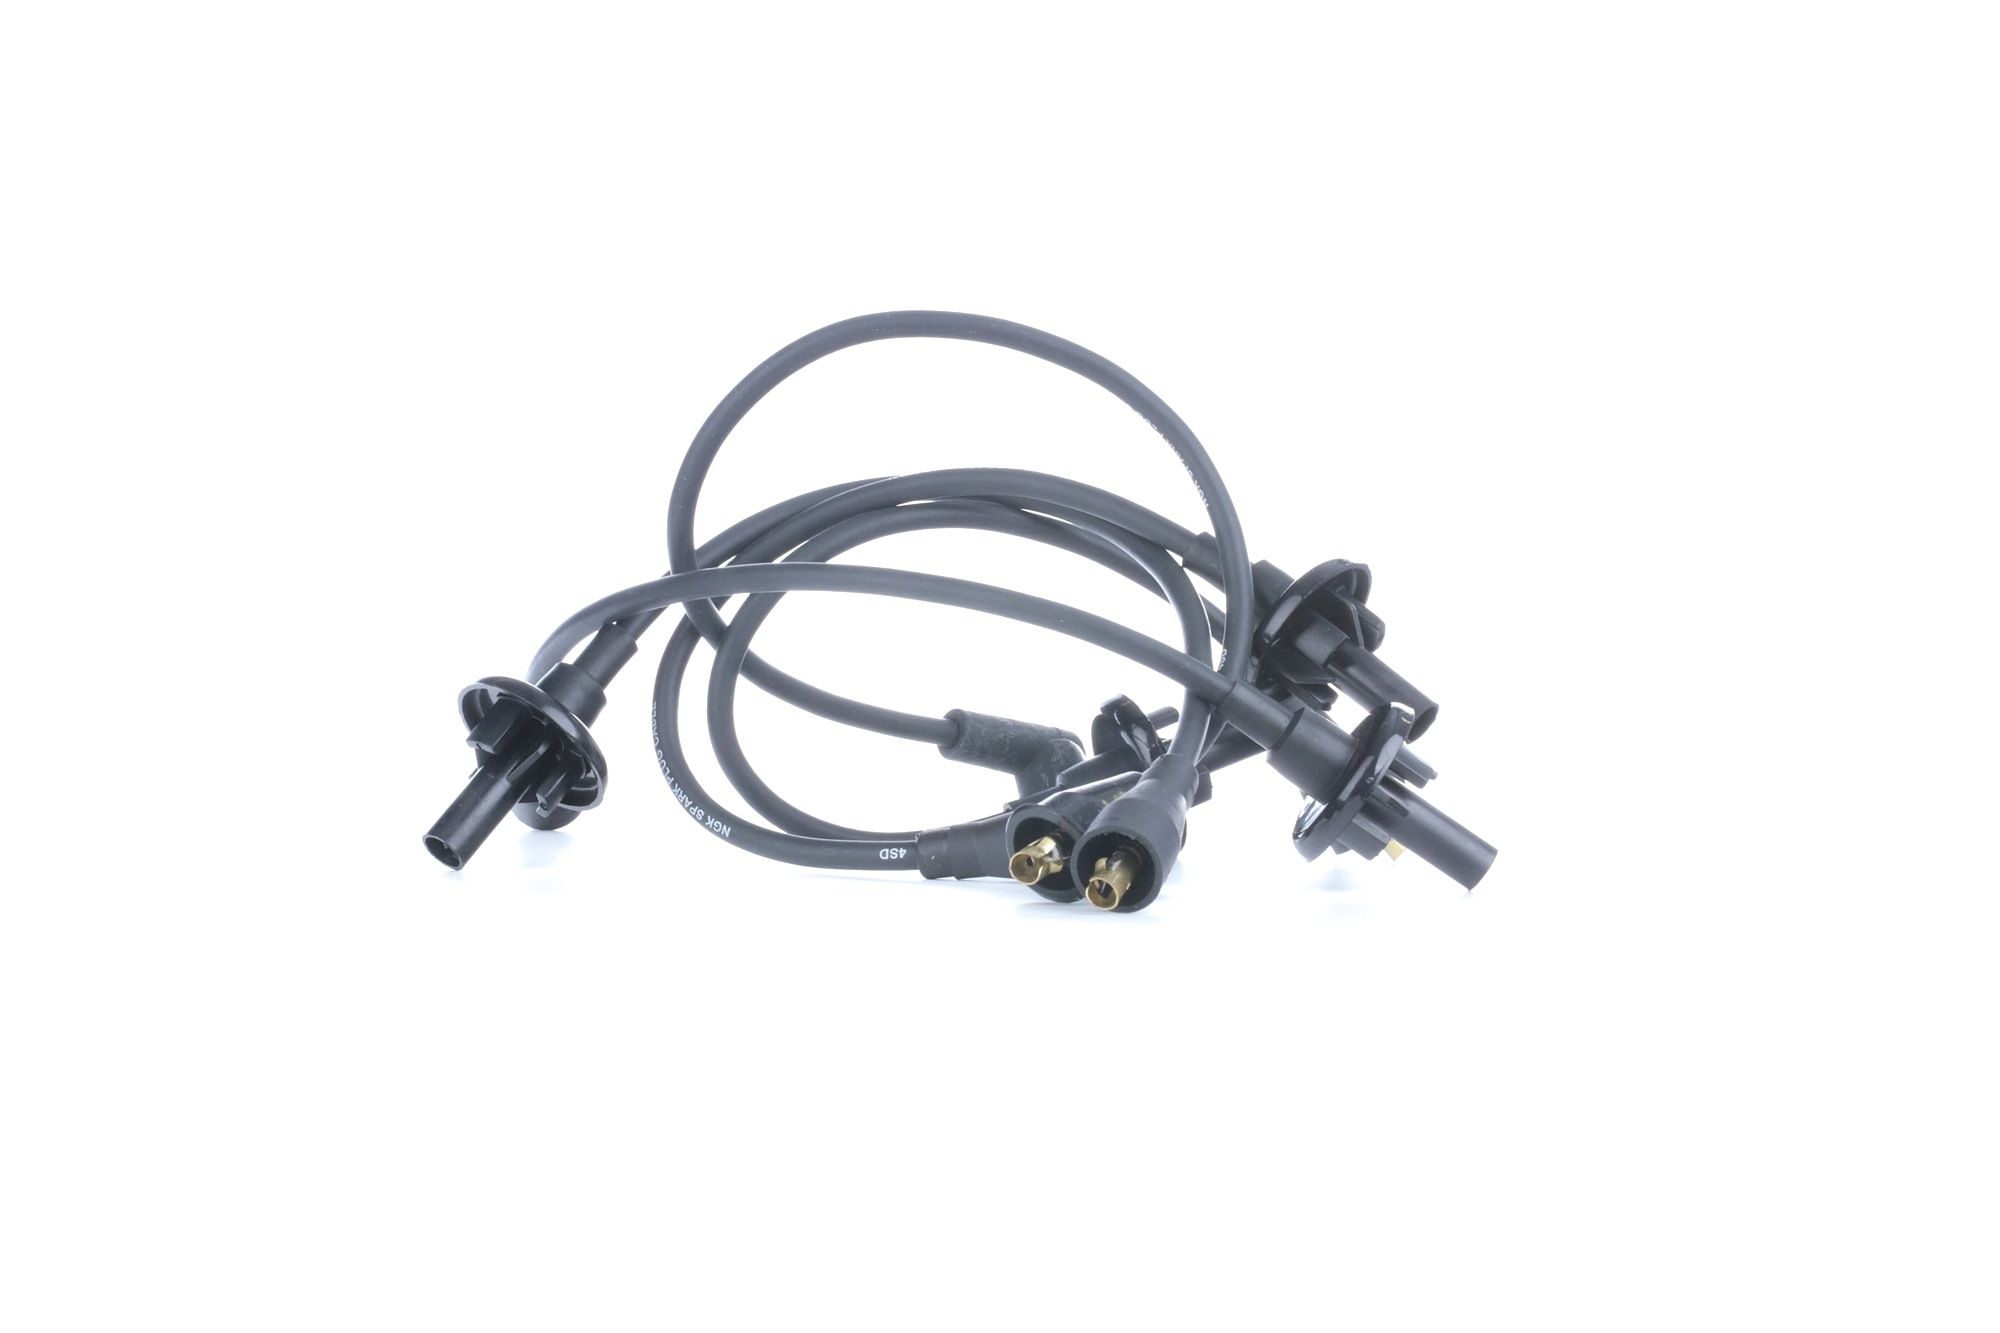 Image of NGK Ignition Lead Set RENAULT 2587 7700590752,RCRN1302,7700590752 Ignition Cable Set,Ignition Wire Set,Ignition Cable Kit,Ignition Lead Kit